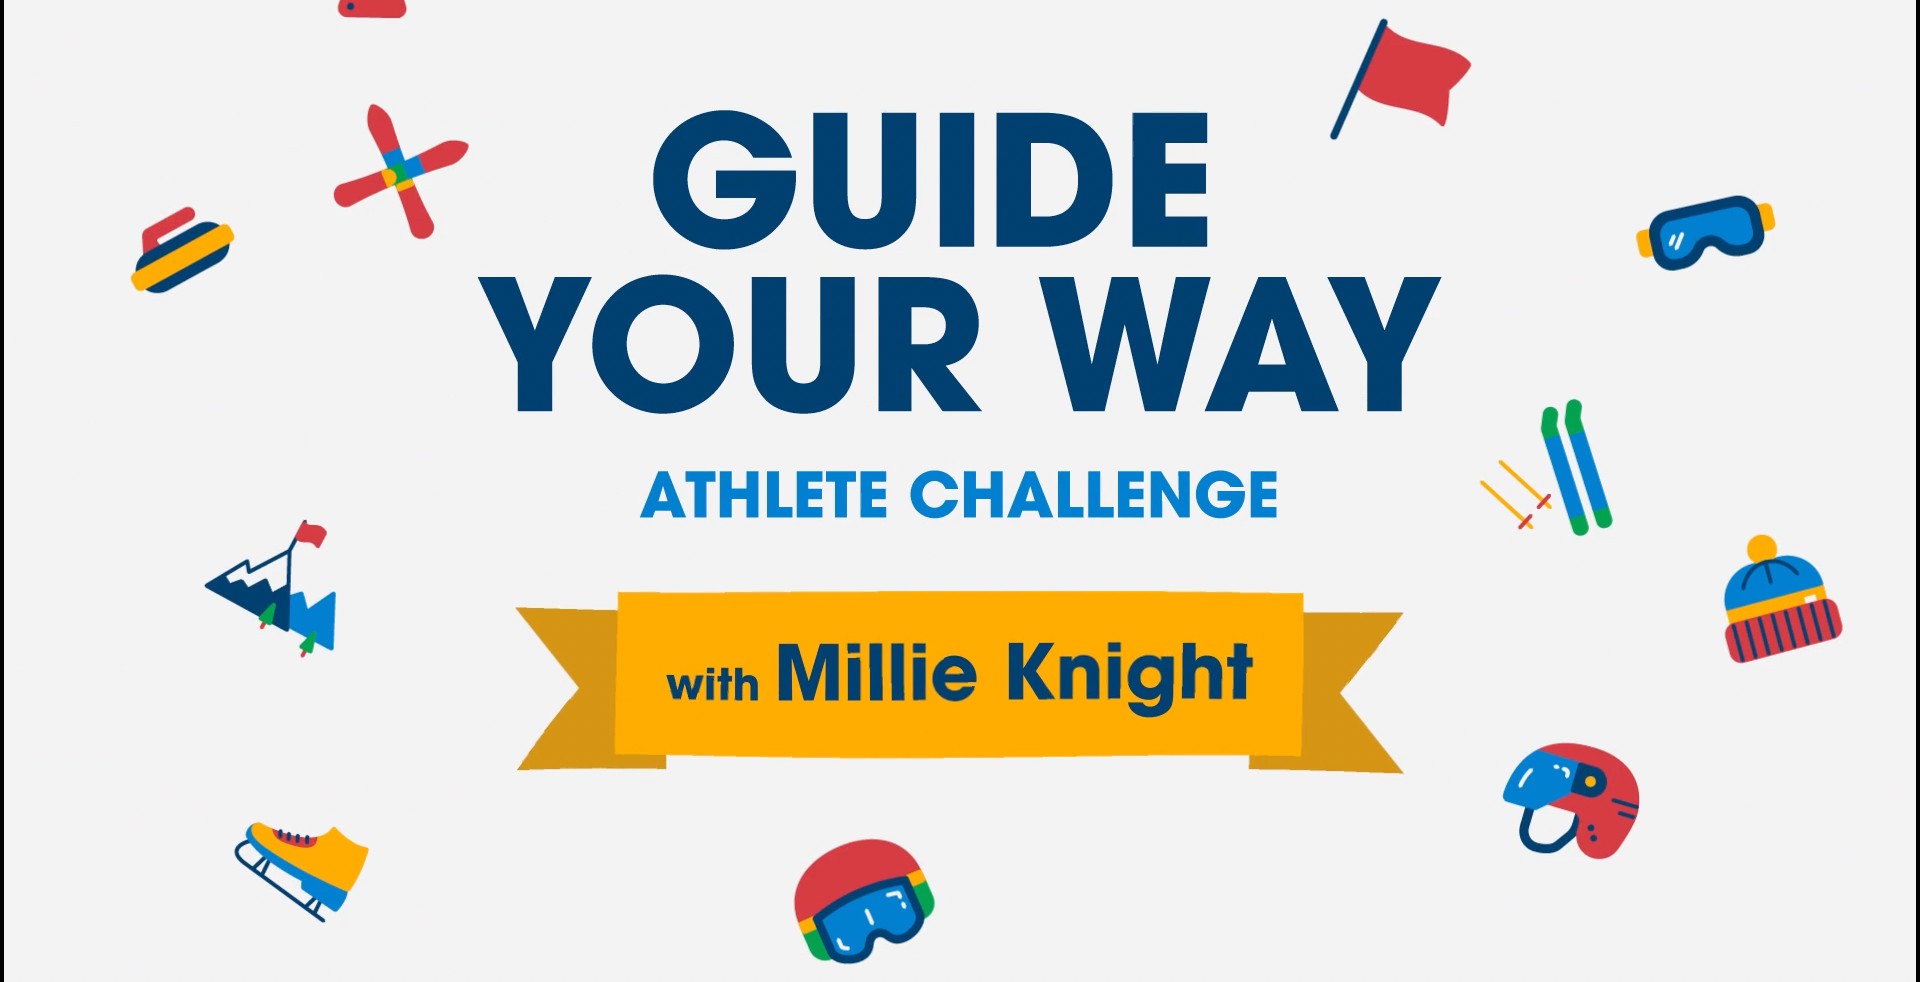 Millie Knight's challenge